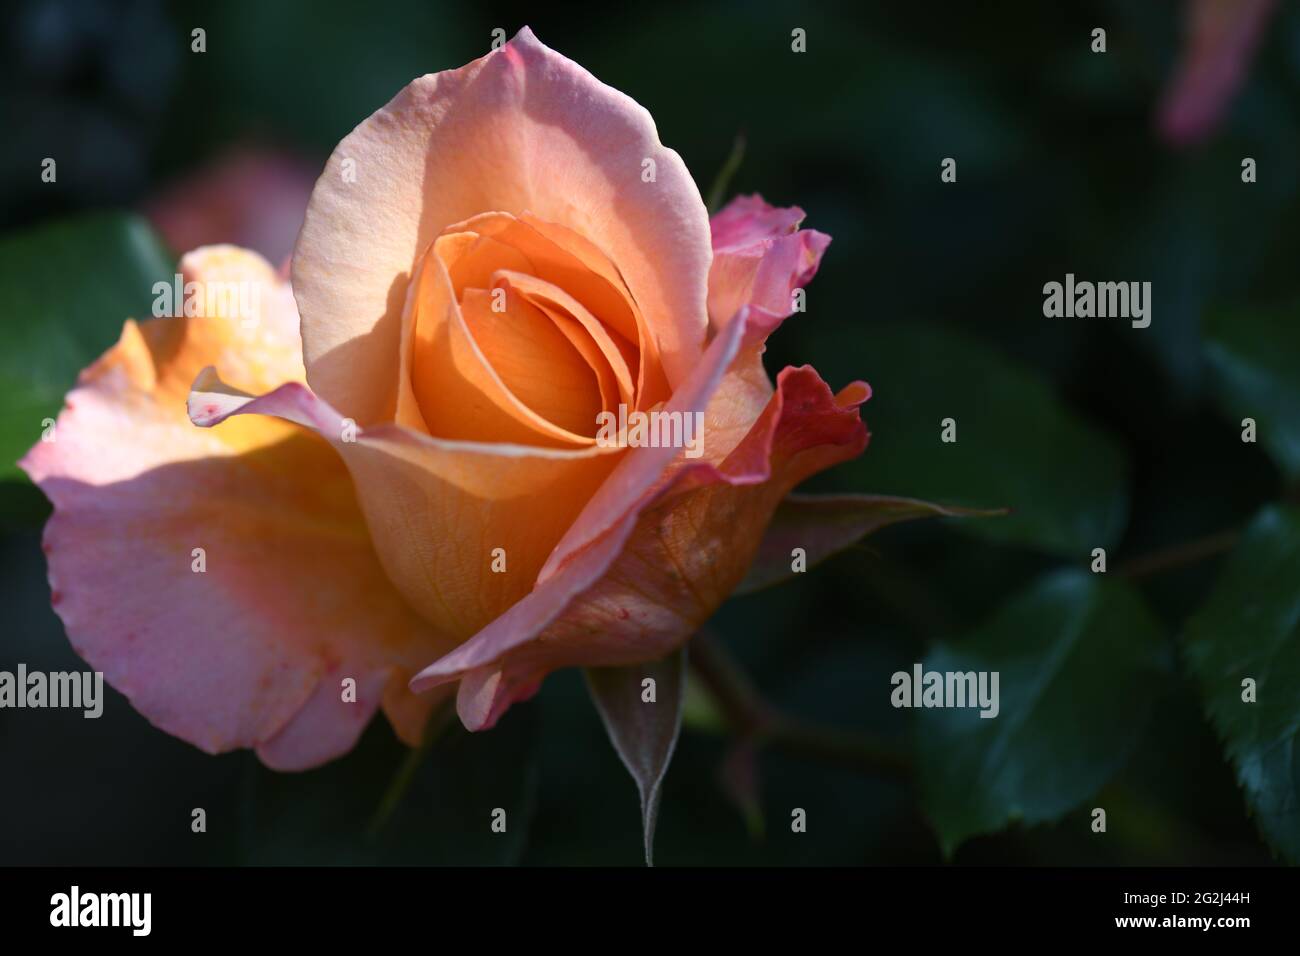 Heilpflanze Rose - rosa - mit herrlicher zart orangRosenblüte als Zeichen der Liebe und Freundschaft und war Grundstock der europäischen Gartenkultur, Stock Photo